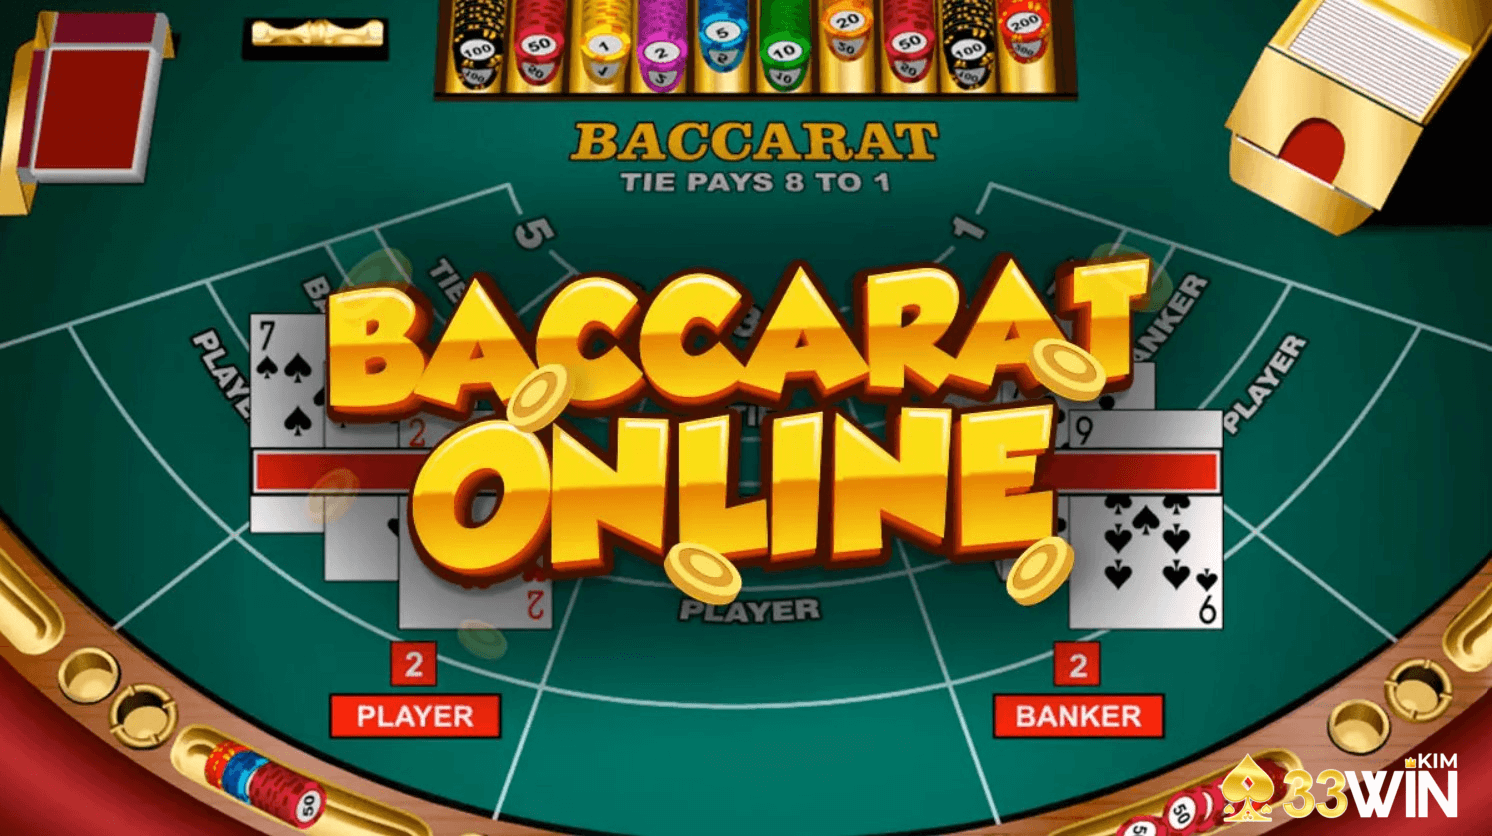 Baccarat là game bài rất được yêu thích trên thế giới